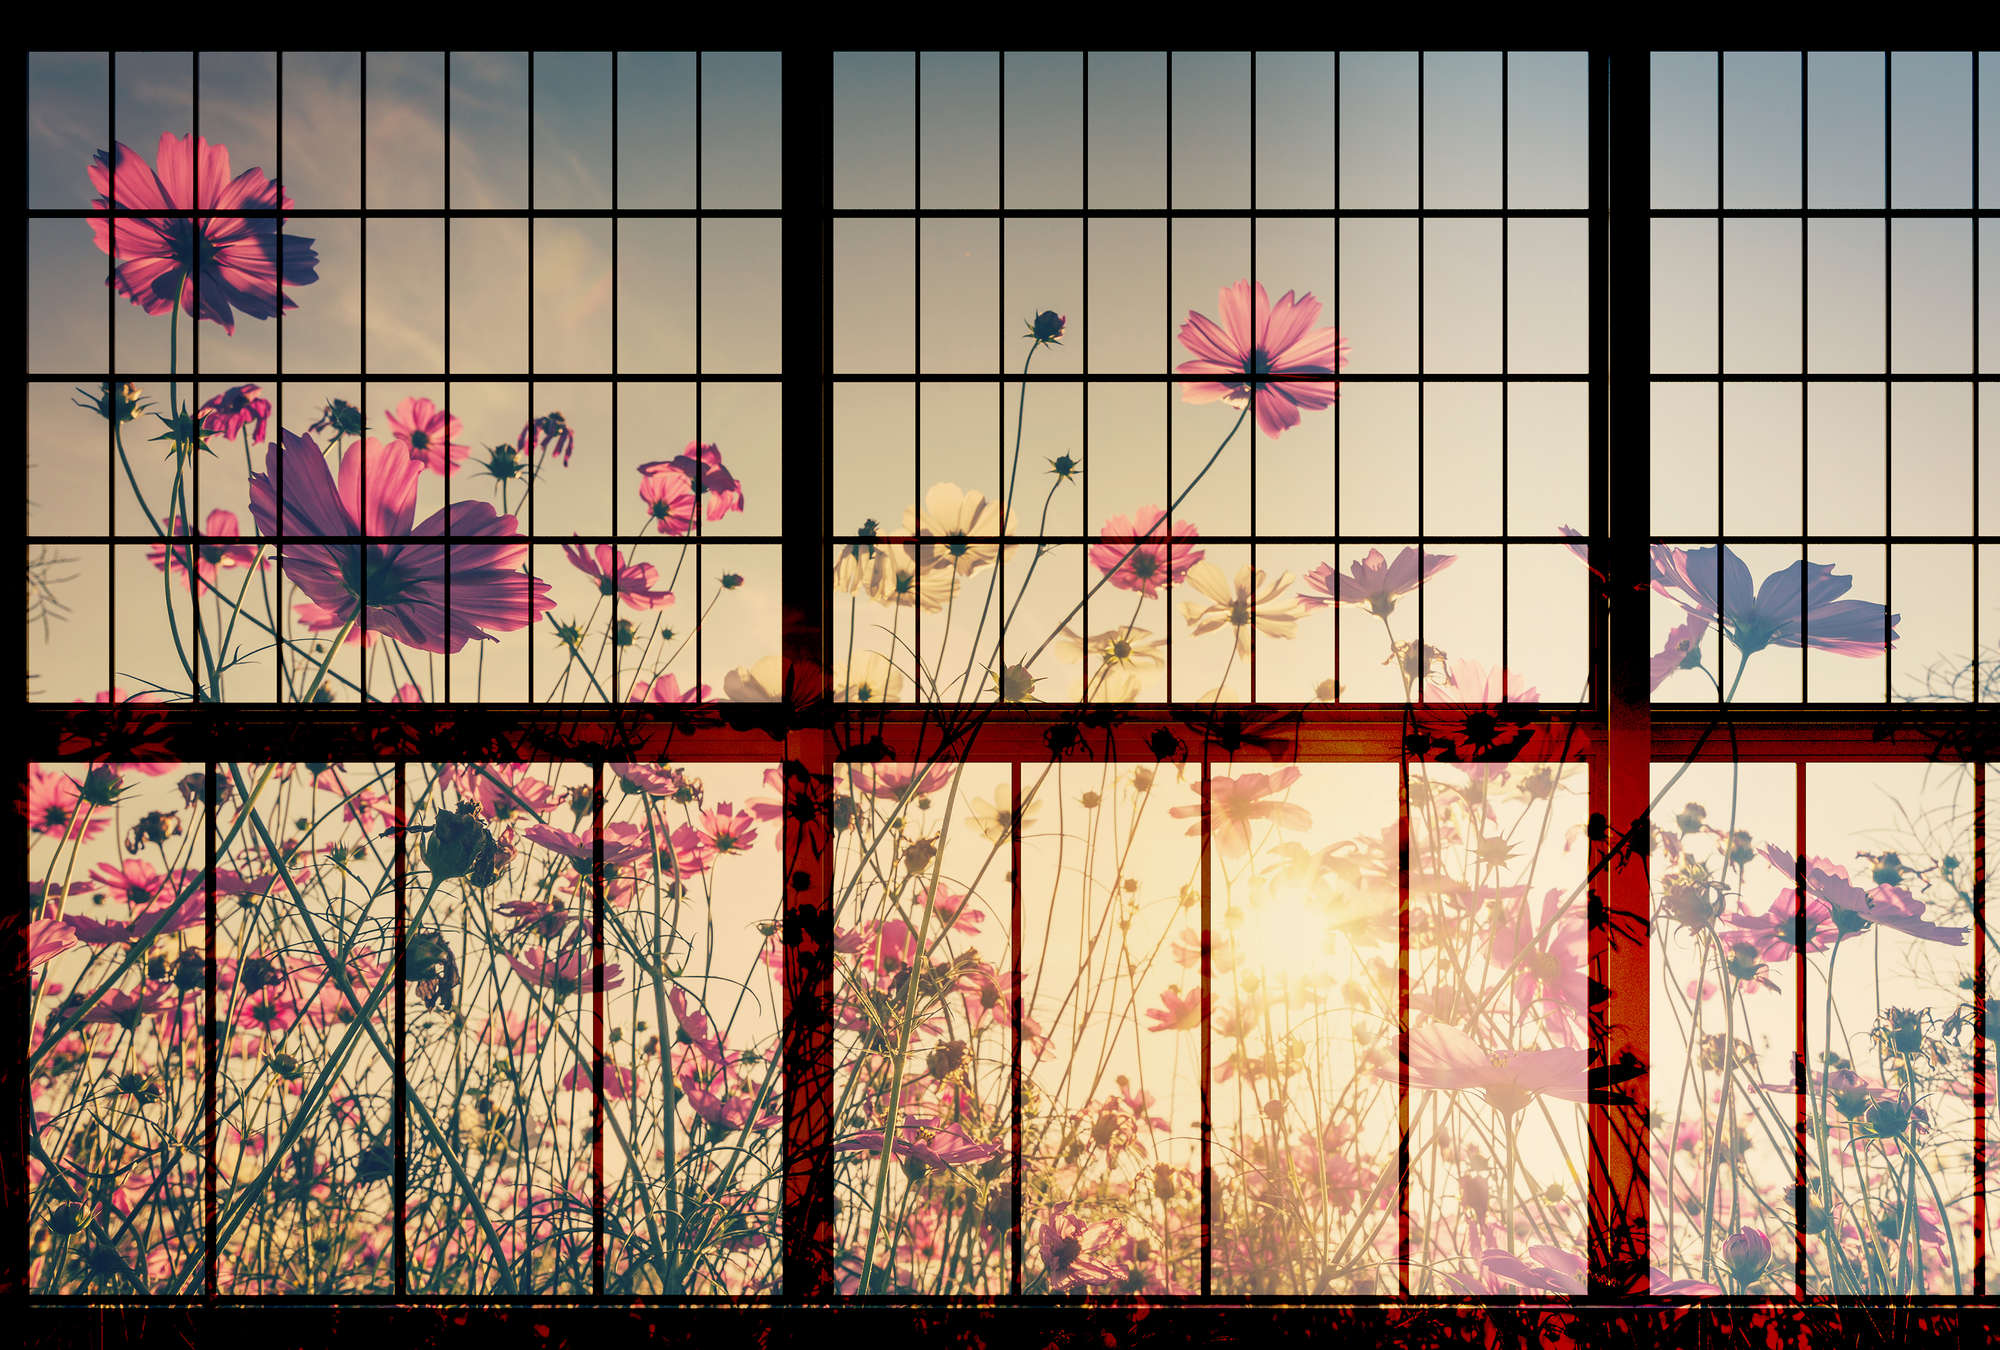             Meadow 1 - papier peint fenêtre à croisillons avec prairie fleurie - vert, rose | nacré intissé lisse
        